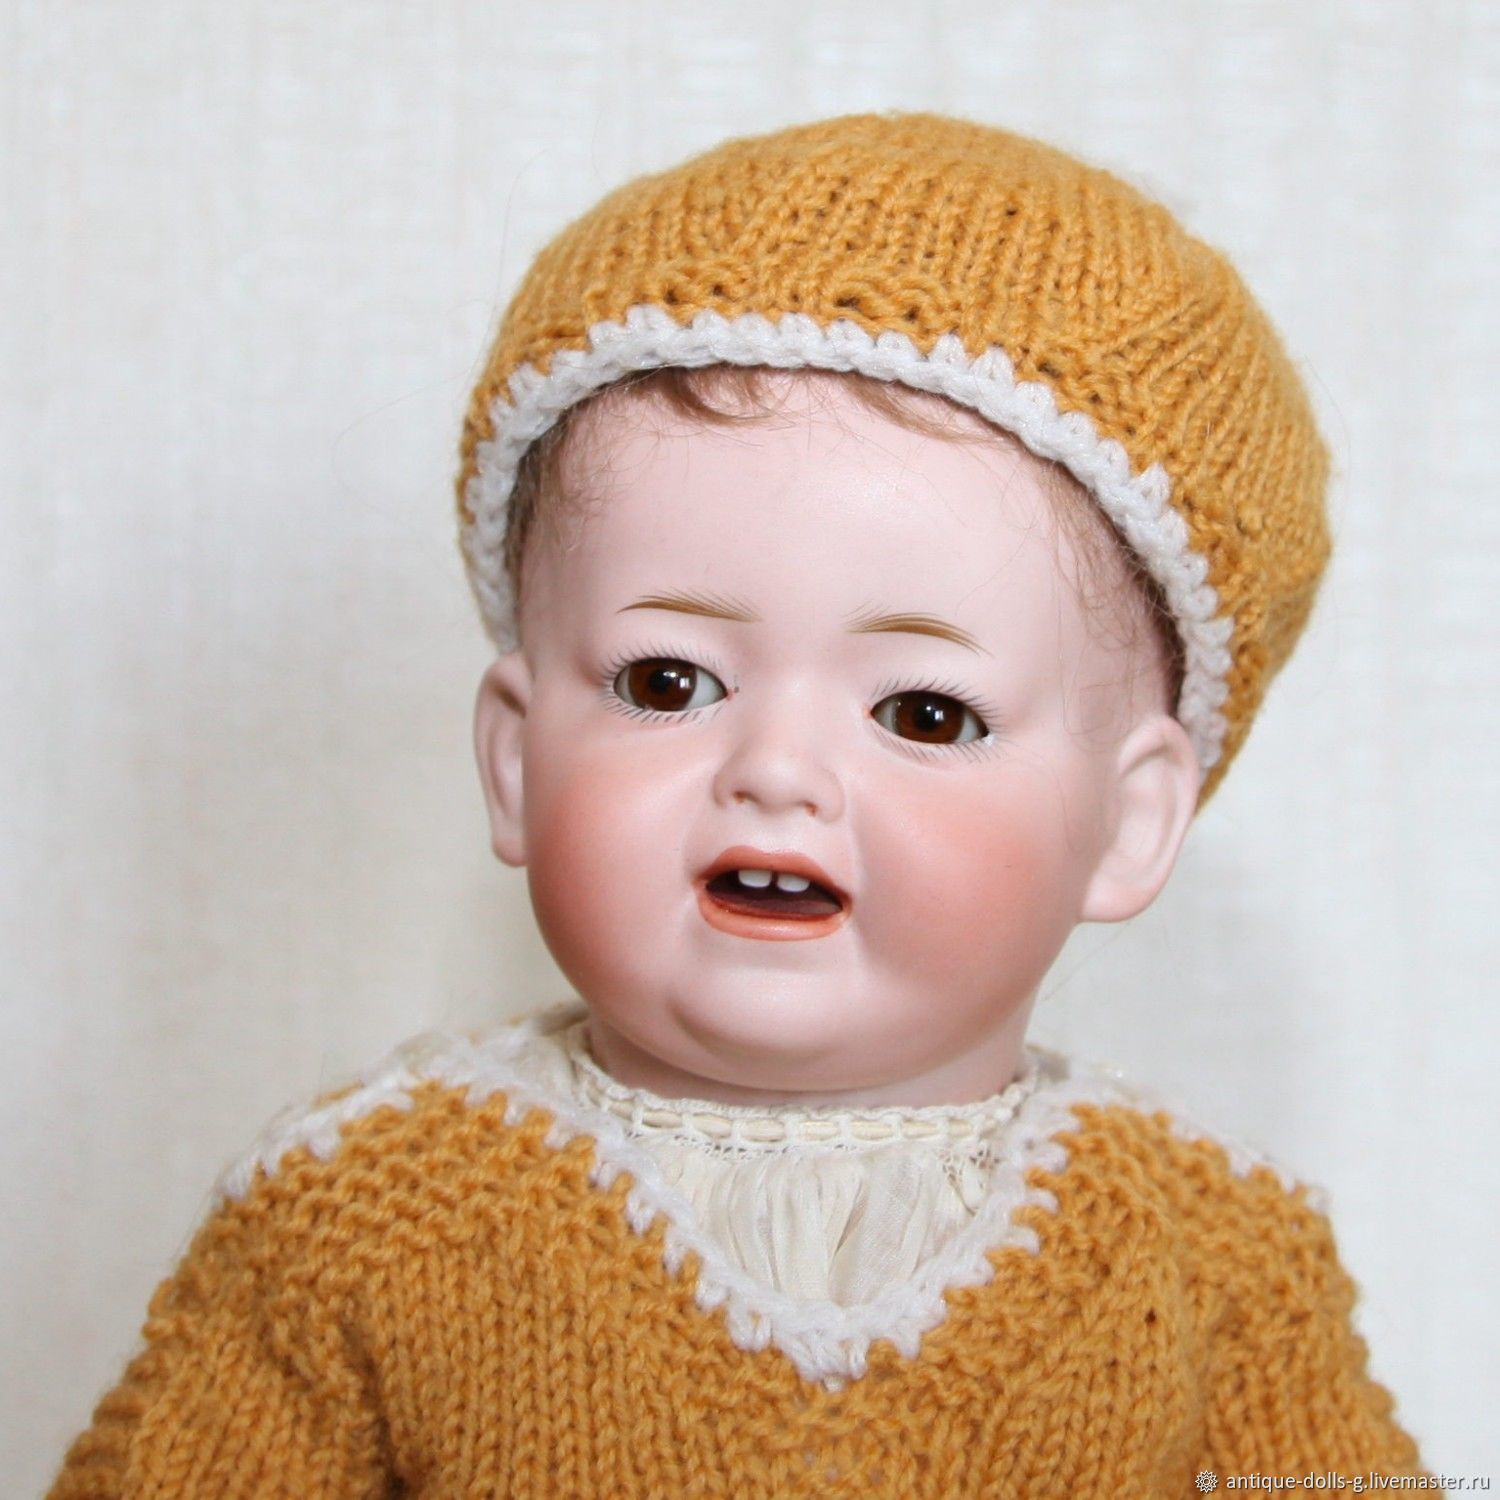 Антикварная кукла Kley & Hahn 525 (Германия), Шарнирная кукла, Ростов-на-Дону,  Фото №1